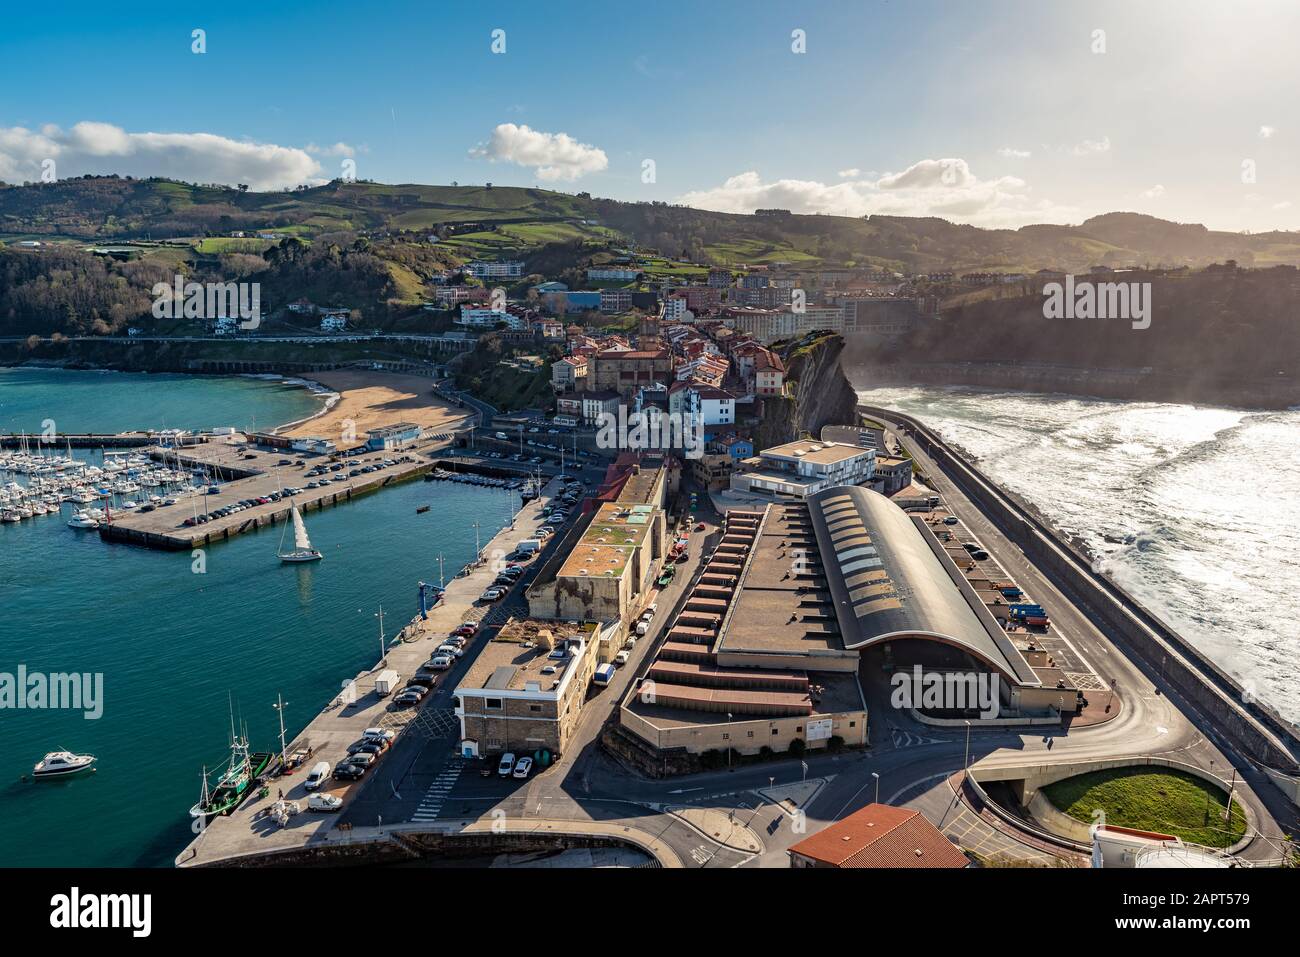 Getaria, Espagne - Mars 11, 2019. Vue sur le village basque de Getaria avec le port de pêche au premier plan et un endroit typique de surf basque. Banque D'Images